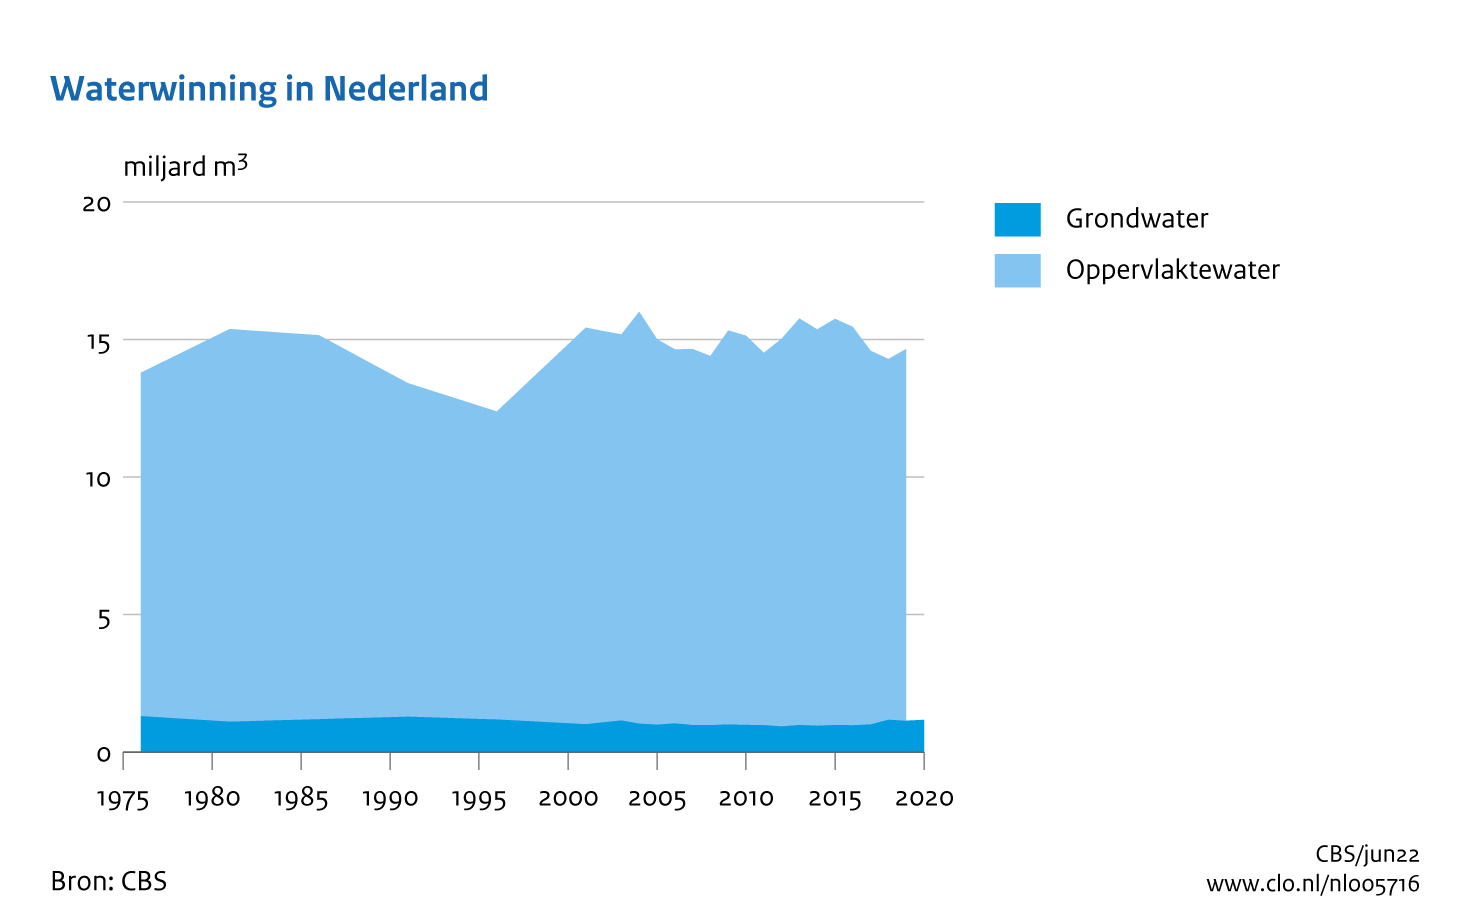 Figuur Waterwinning in Nederland 1976-2020. In de rest van de tekst wordt deze figuur uitgebreider uitgelegd.